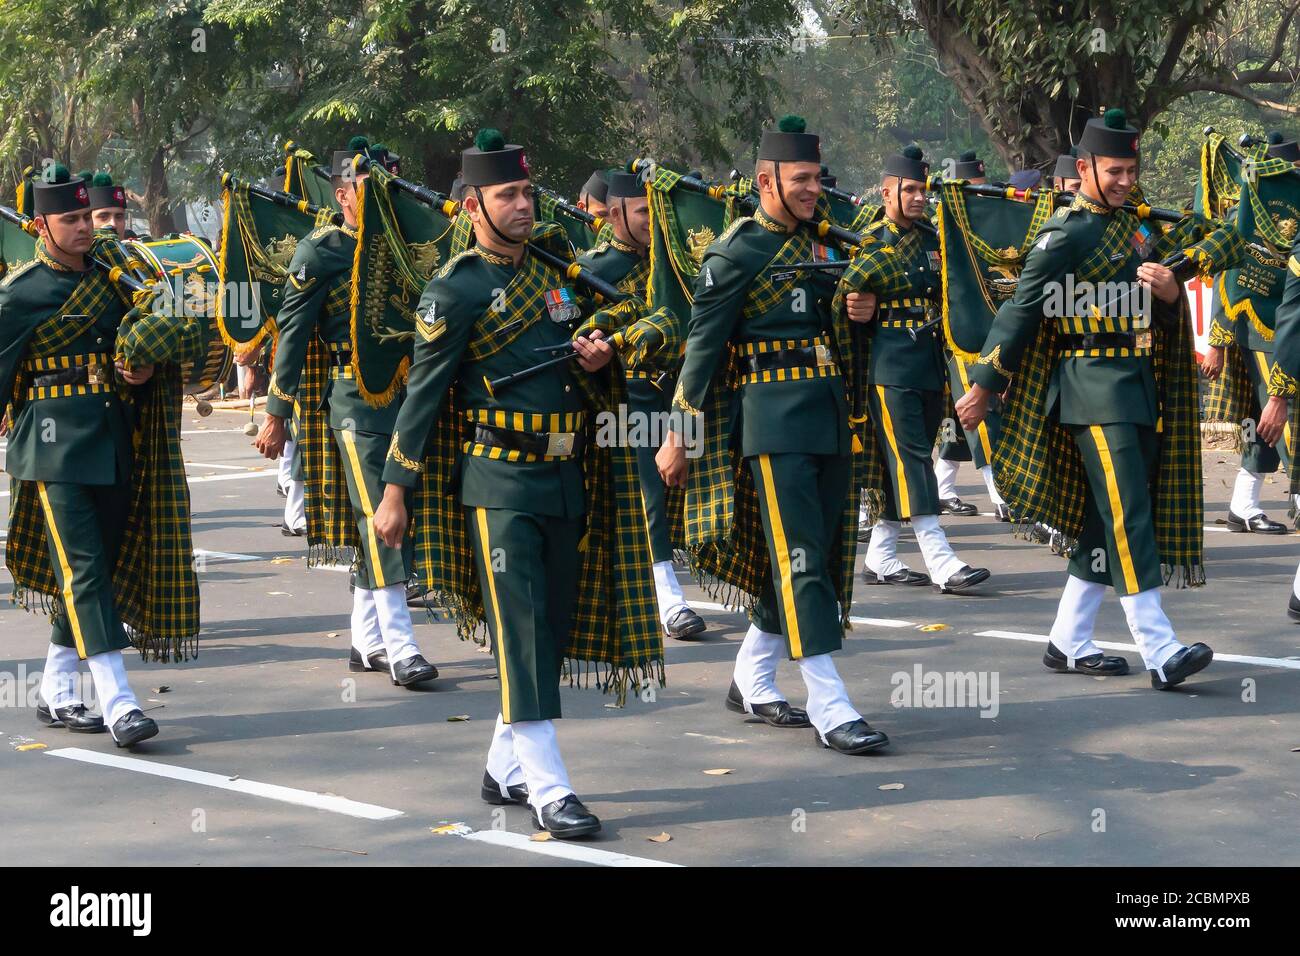 Kolkata, Westbengalen, Indien - 26. Januar 2020 : Indische Armeeoffiziere, die als Musikband verkleidet sind und Musikinstrumente tragen, teilen einen Witz. Stockfoto